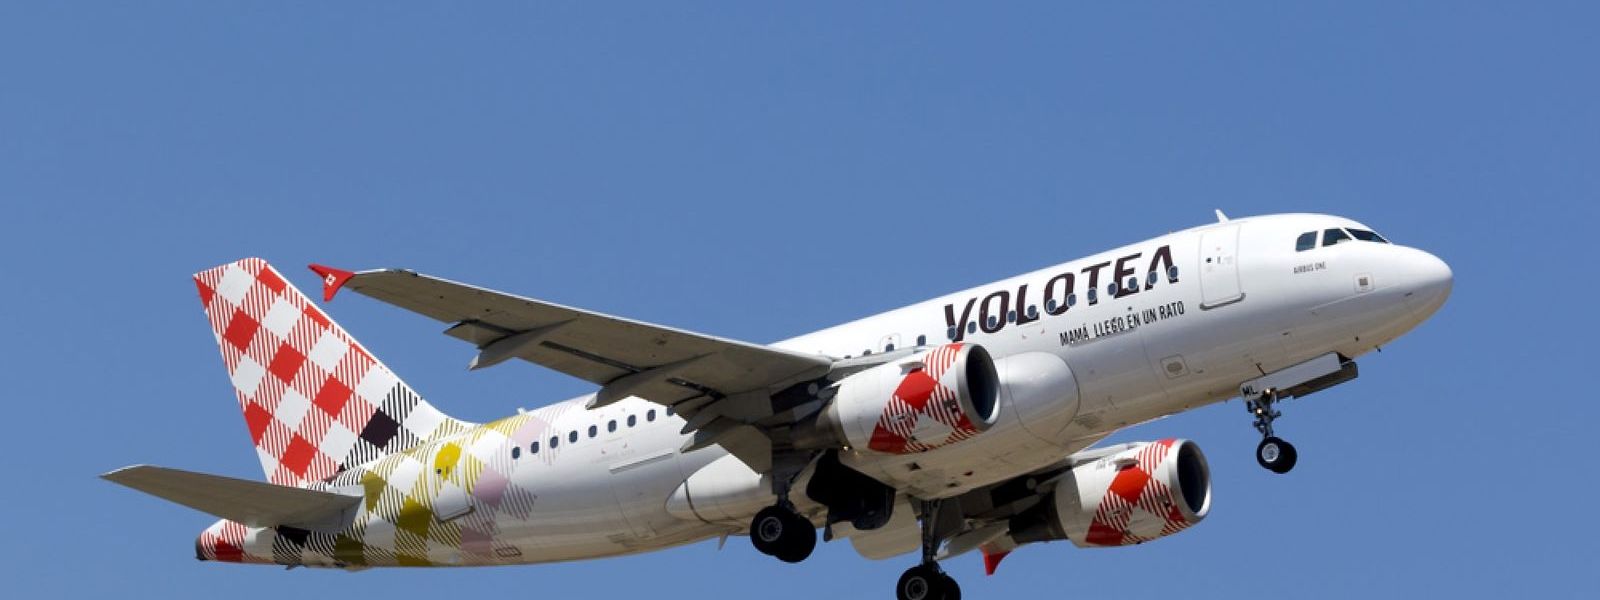 La compagnie aérienne espagnole Volotea s'est excusée auprès des passagers pour les désagréments causés.